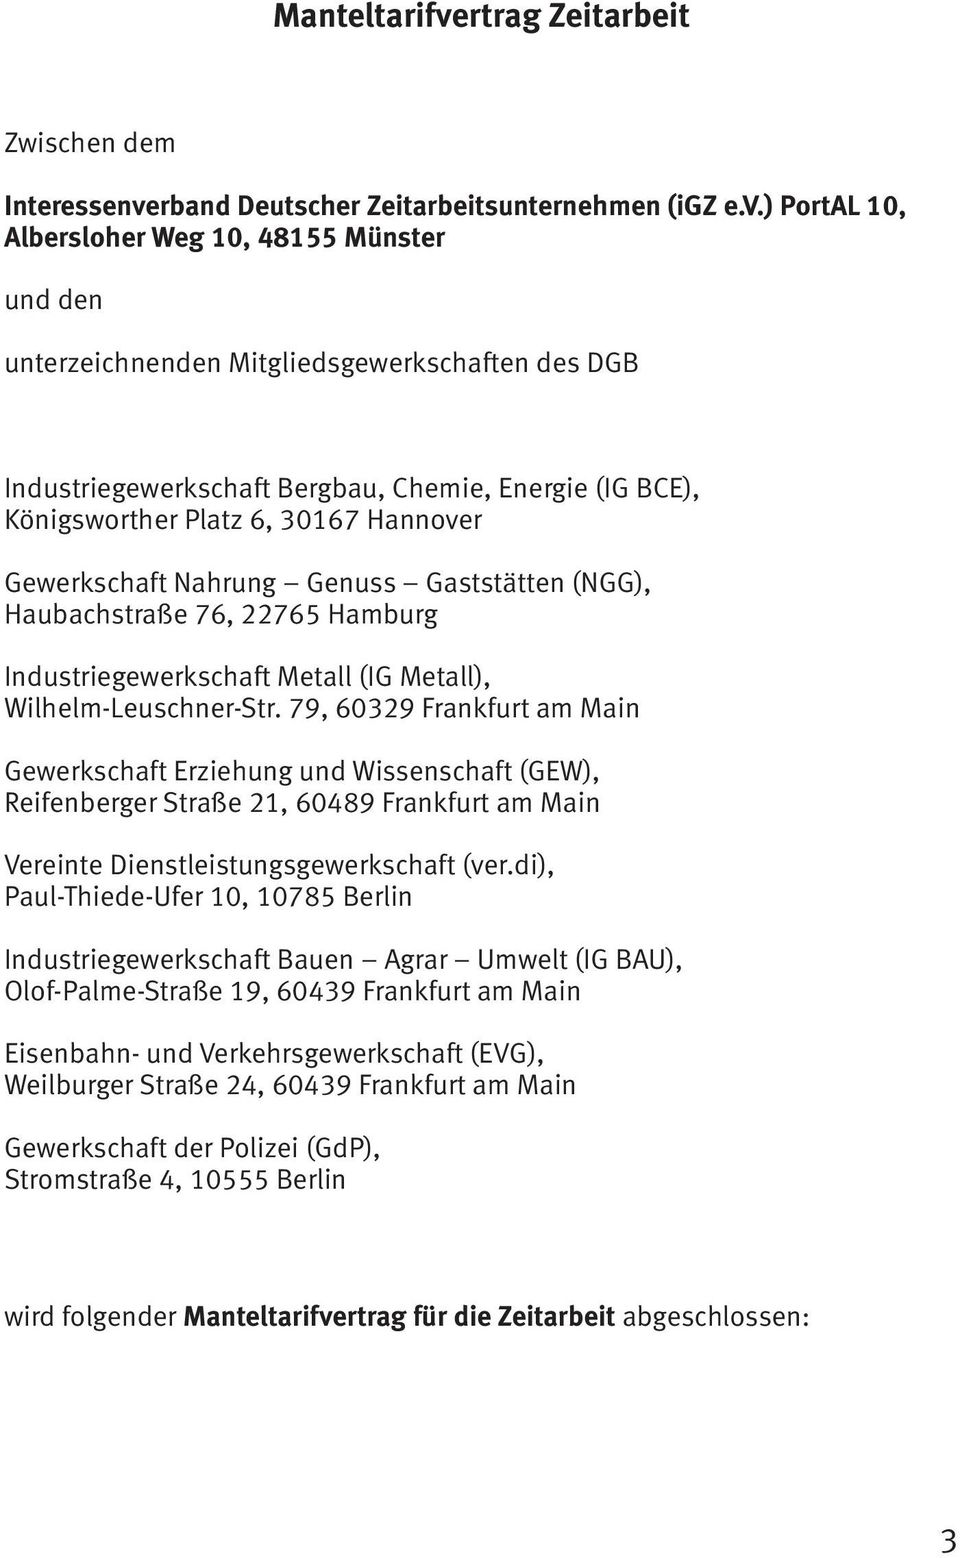 rband Deutscher Zeitarbeitsunternehmen (igz e.v.